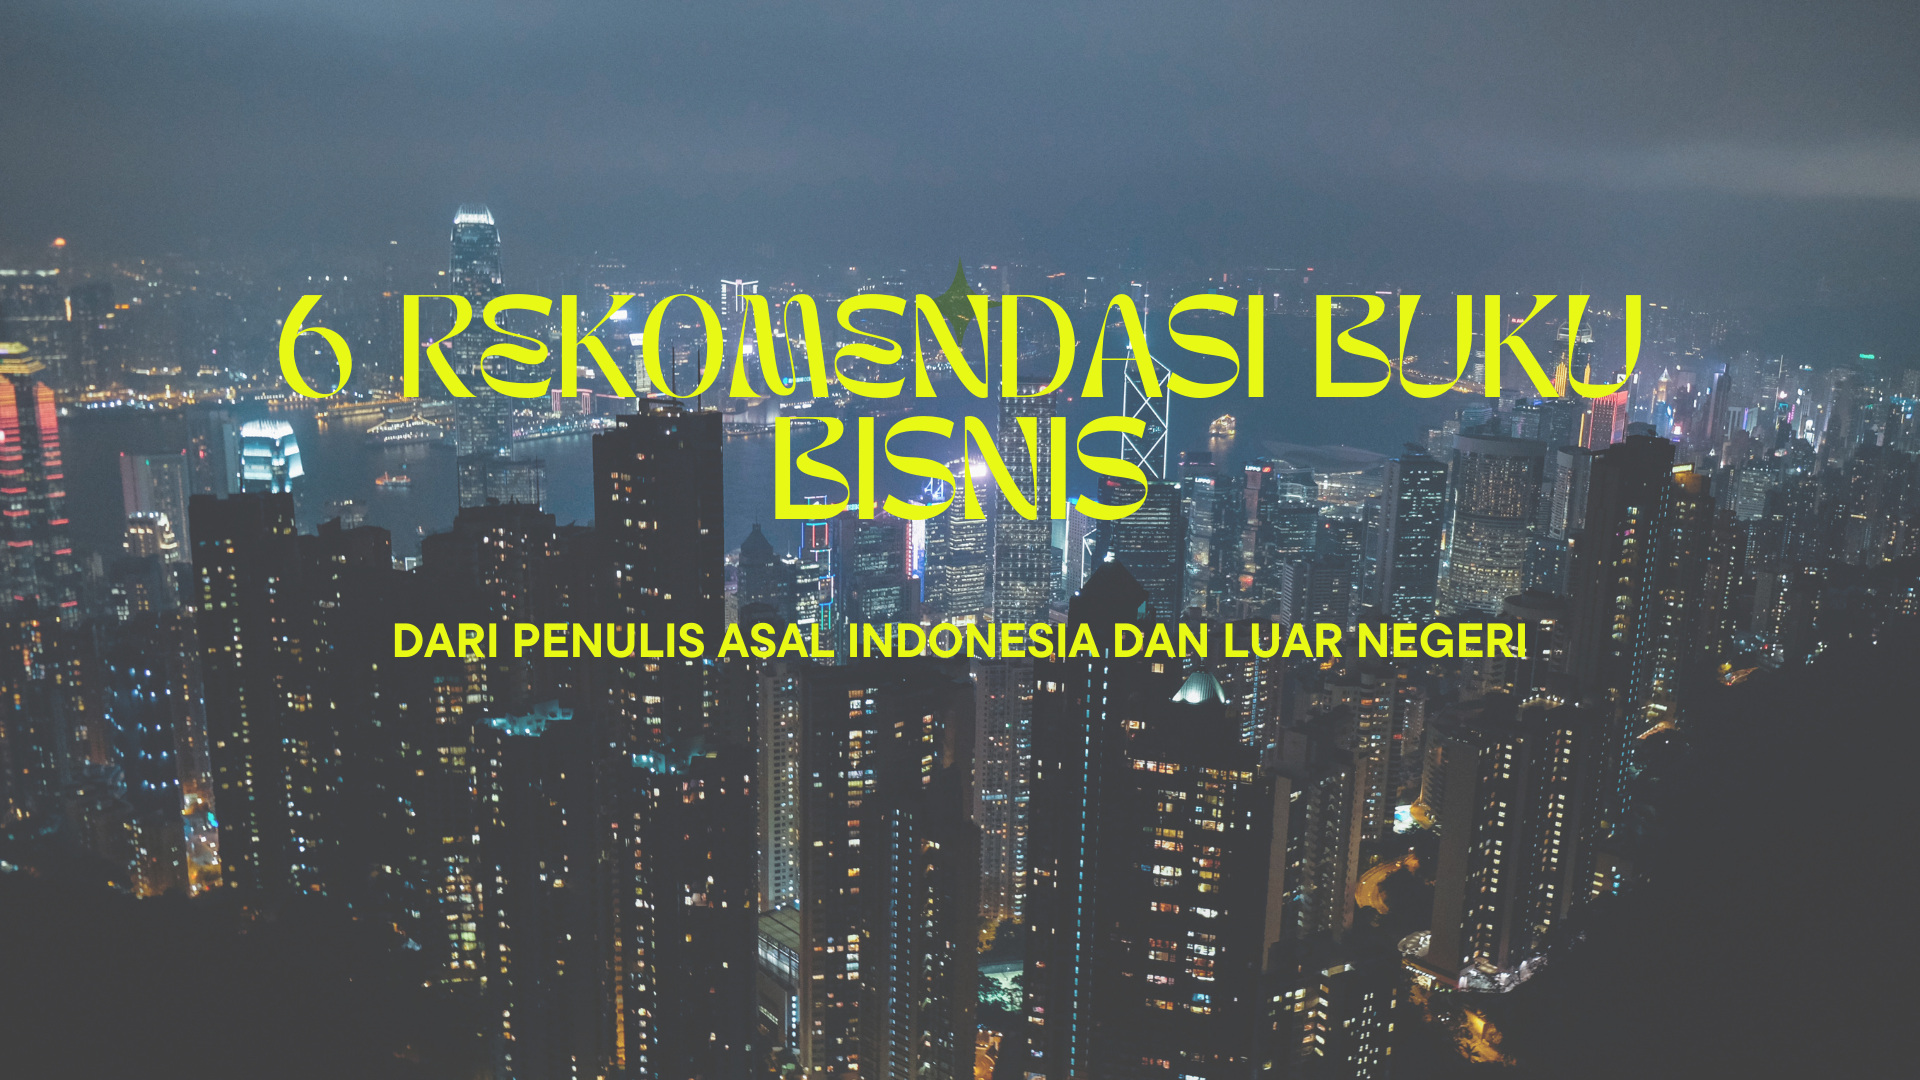 6 Rekomendasi Buku Bisnis dari Penulis Asal Indonesia dan Luar Negeri